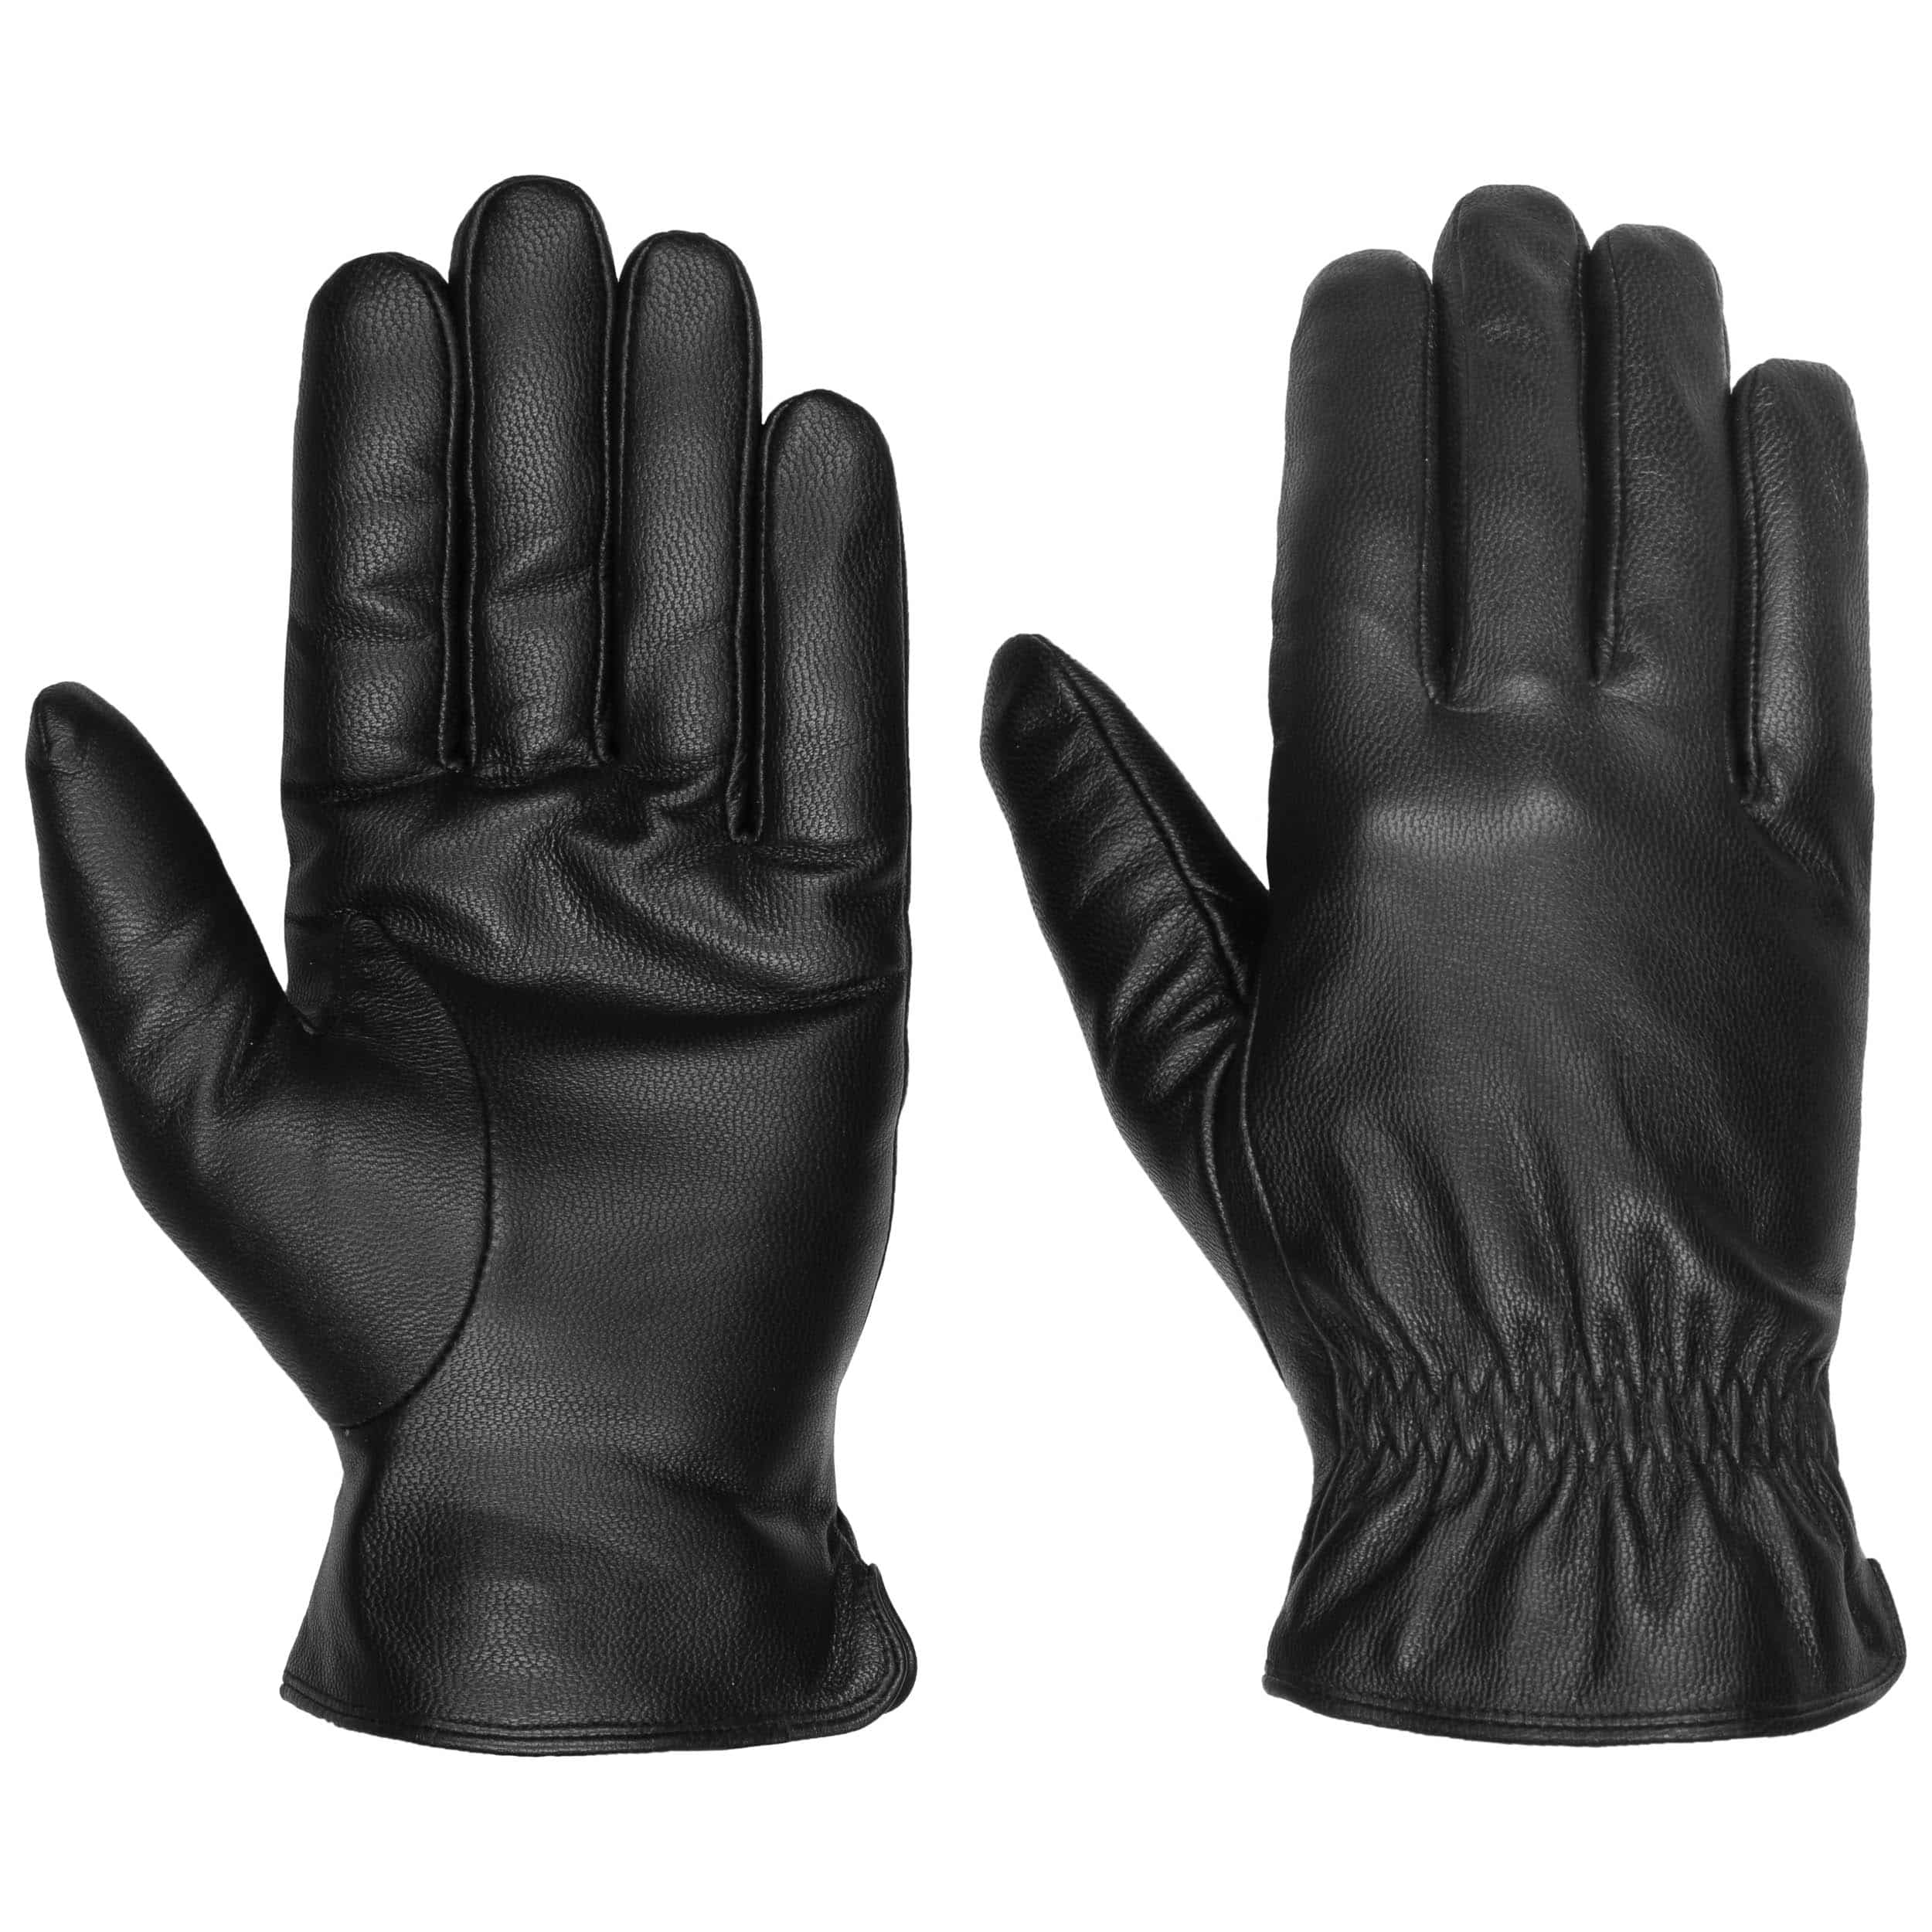 Accessoires Handschuhe Lederhandschuhe Hochwertige Leder Handschuhe 